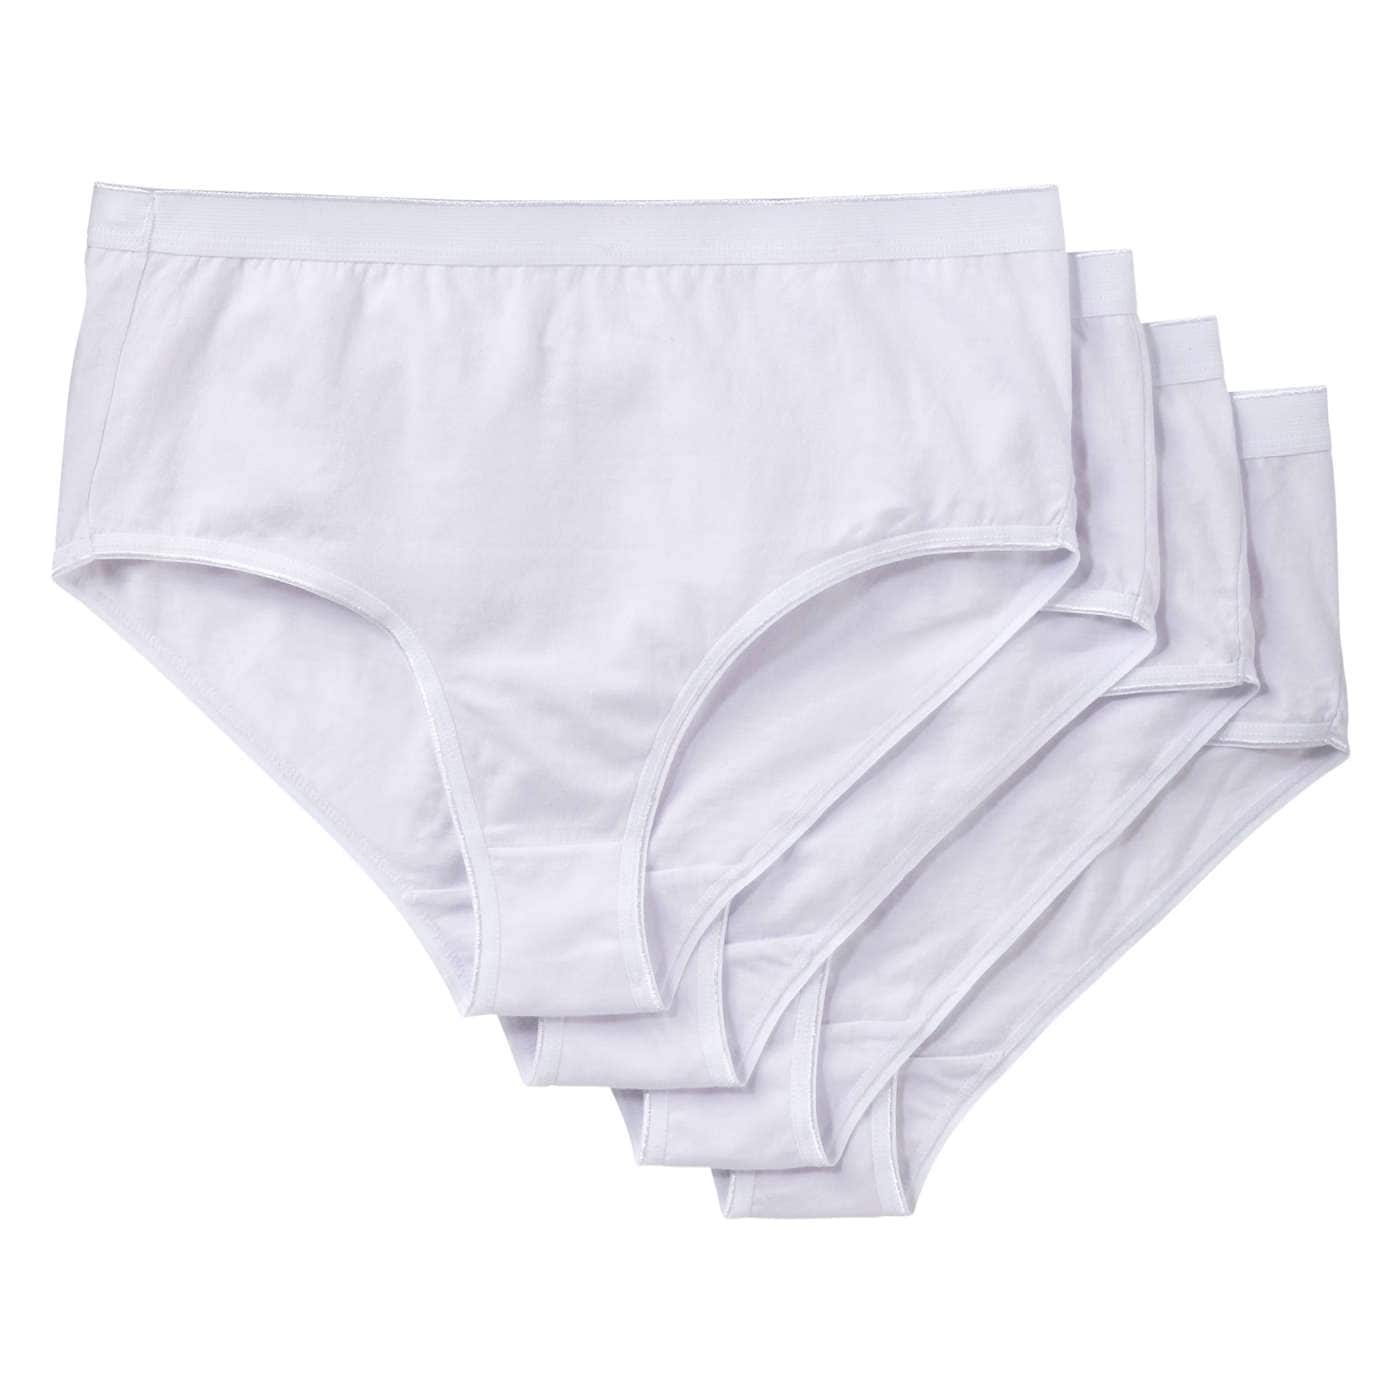 YouRegina Brand Woman Cotton Underwear Women Girls Shorts Boxers